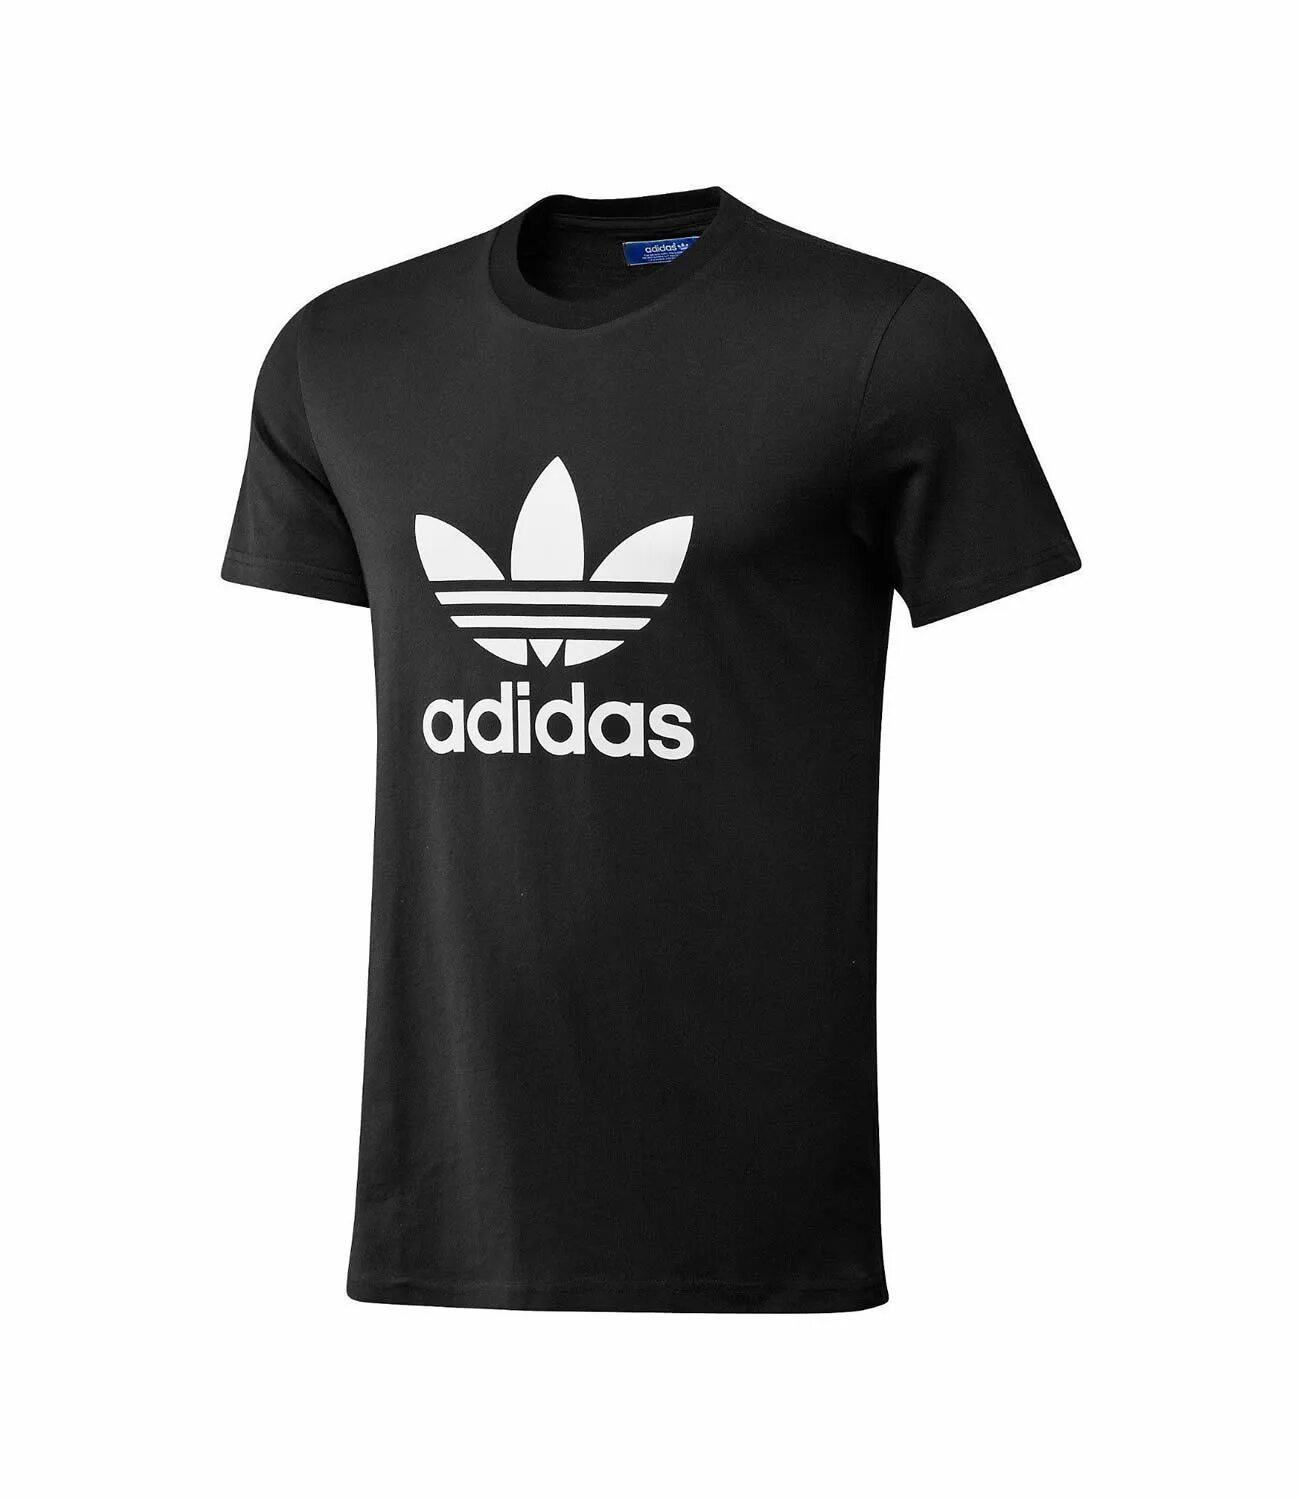 Версии адидас. Adidas Printshop. T-Shirt adidas Black. Адидас т ширт. Adidas t Shirt New collection.